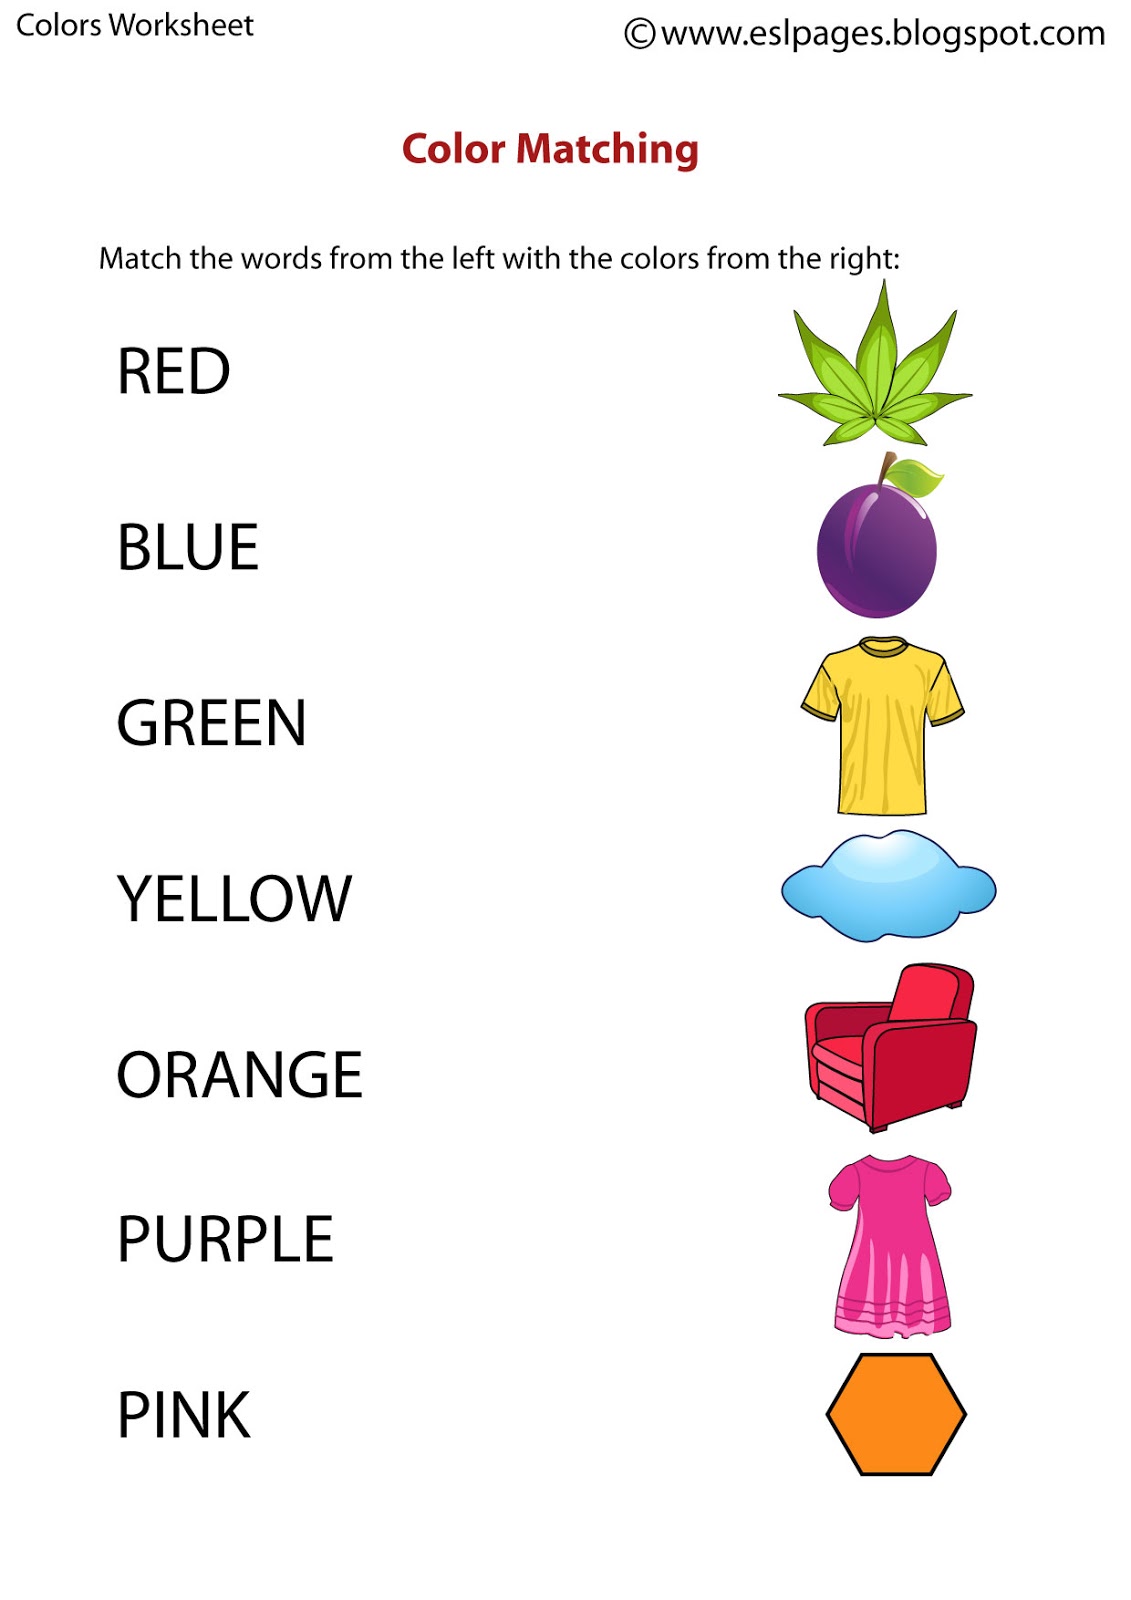 colors-worksheets-for-kindergarten